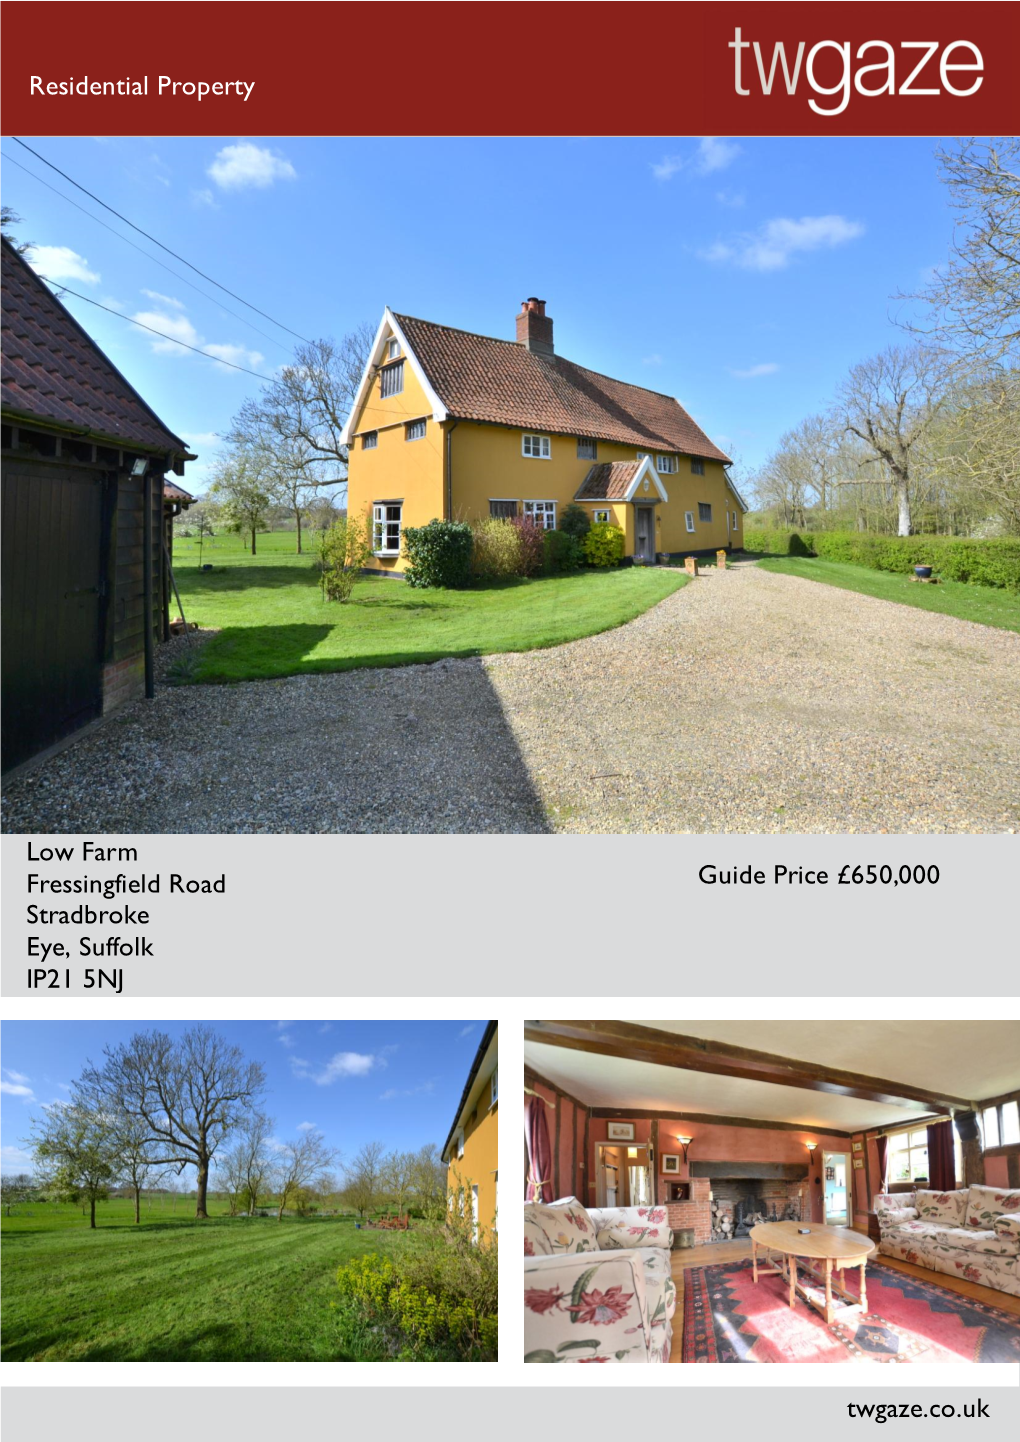 Residential Property Low Farm Fressingfield Road Stradbroke Eye, Suffolk IP21 5NJ Guide Price £650,000 Twgaze.Co.Uk